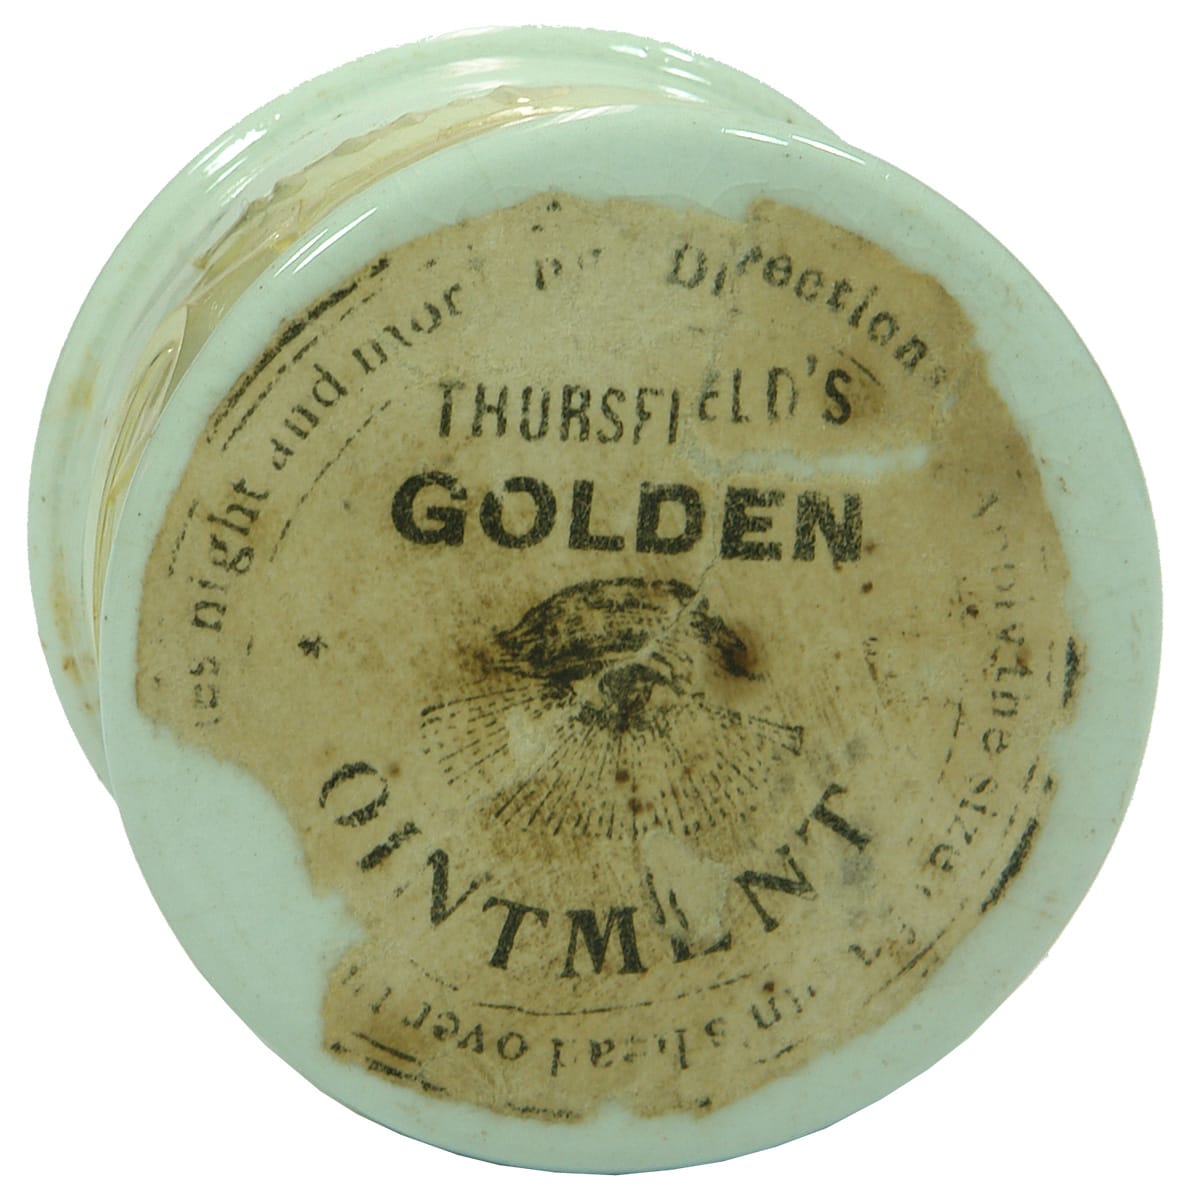 Thursfield's Golden Ointment Colac Label Pot Lid